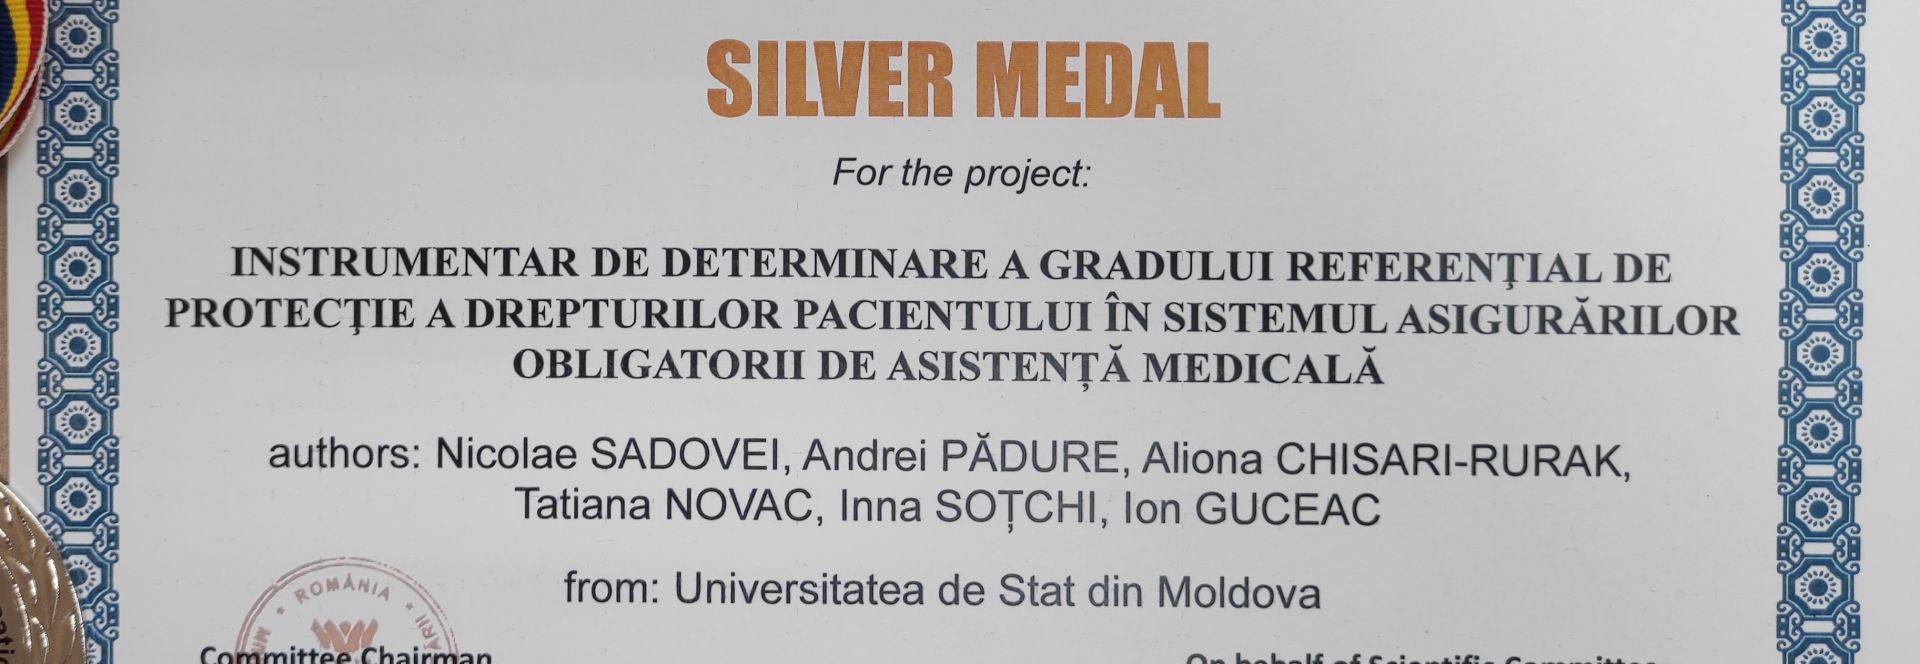 medalie de argint